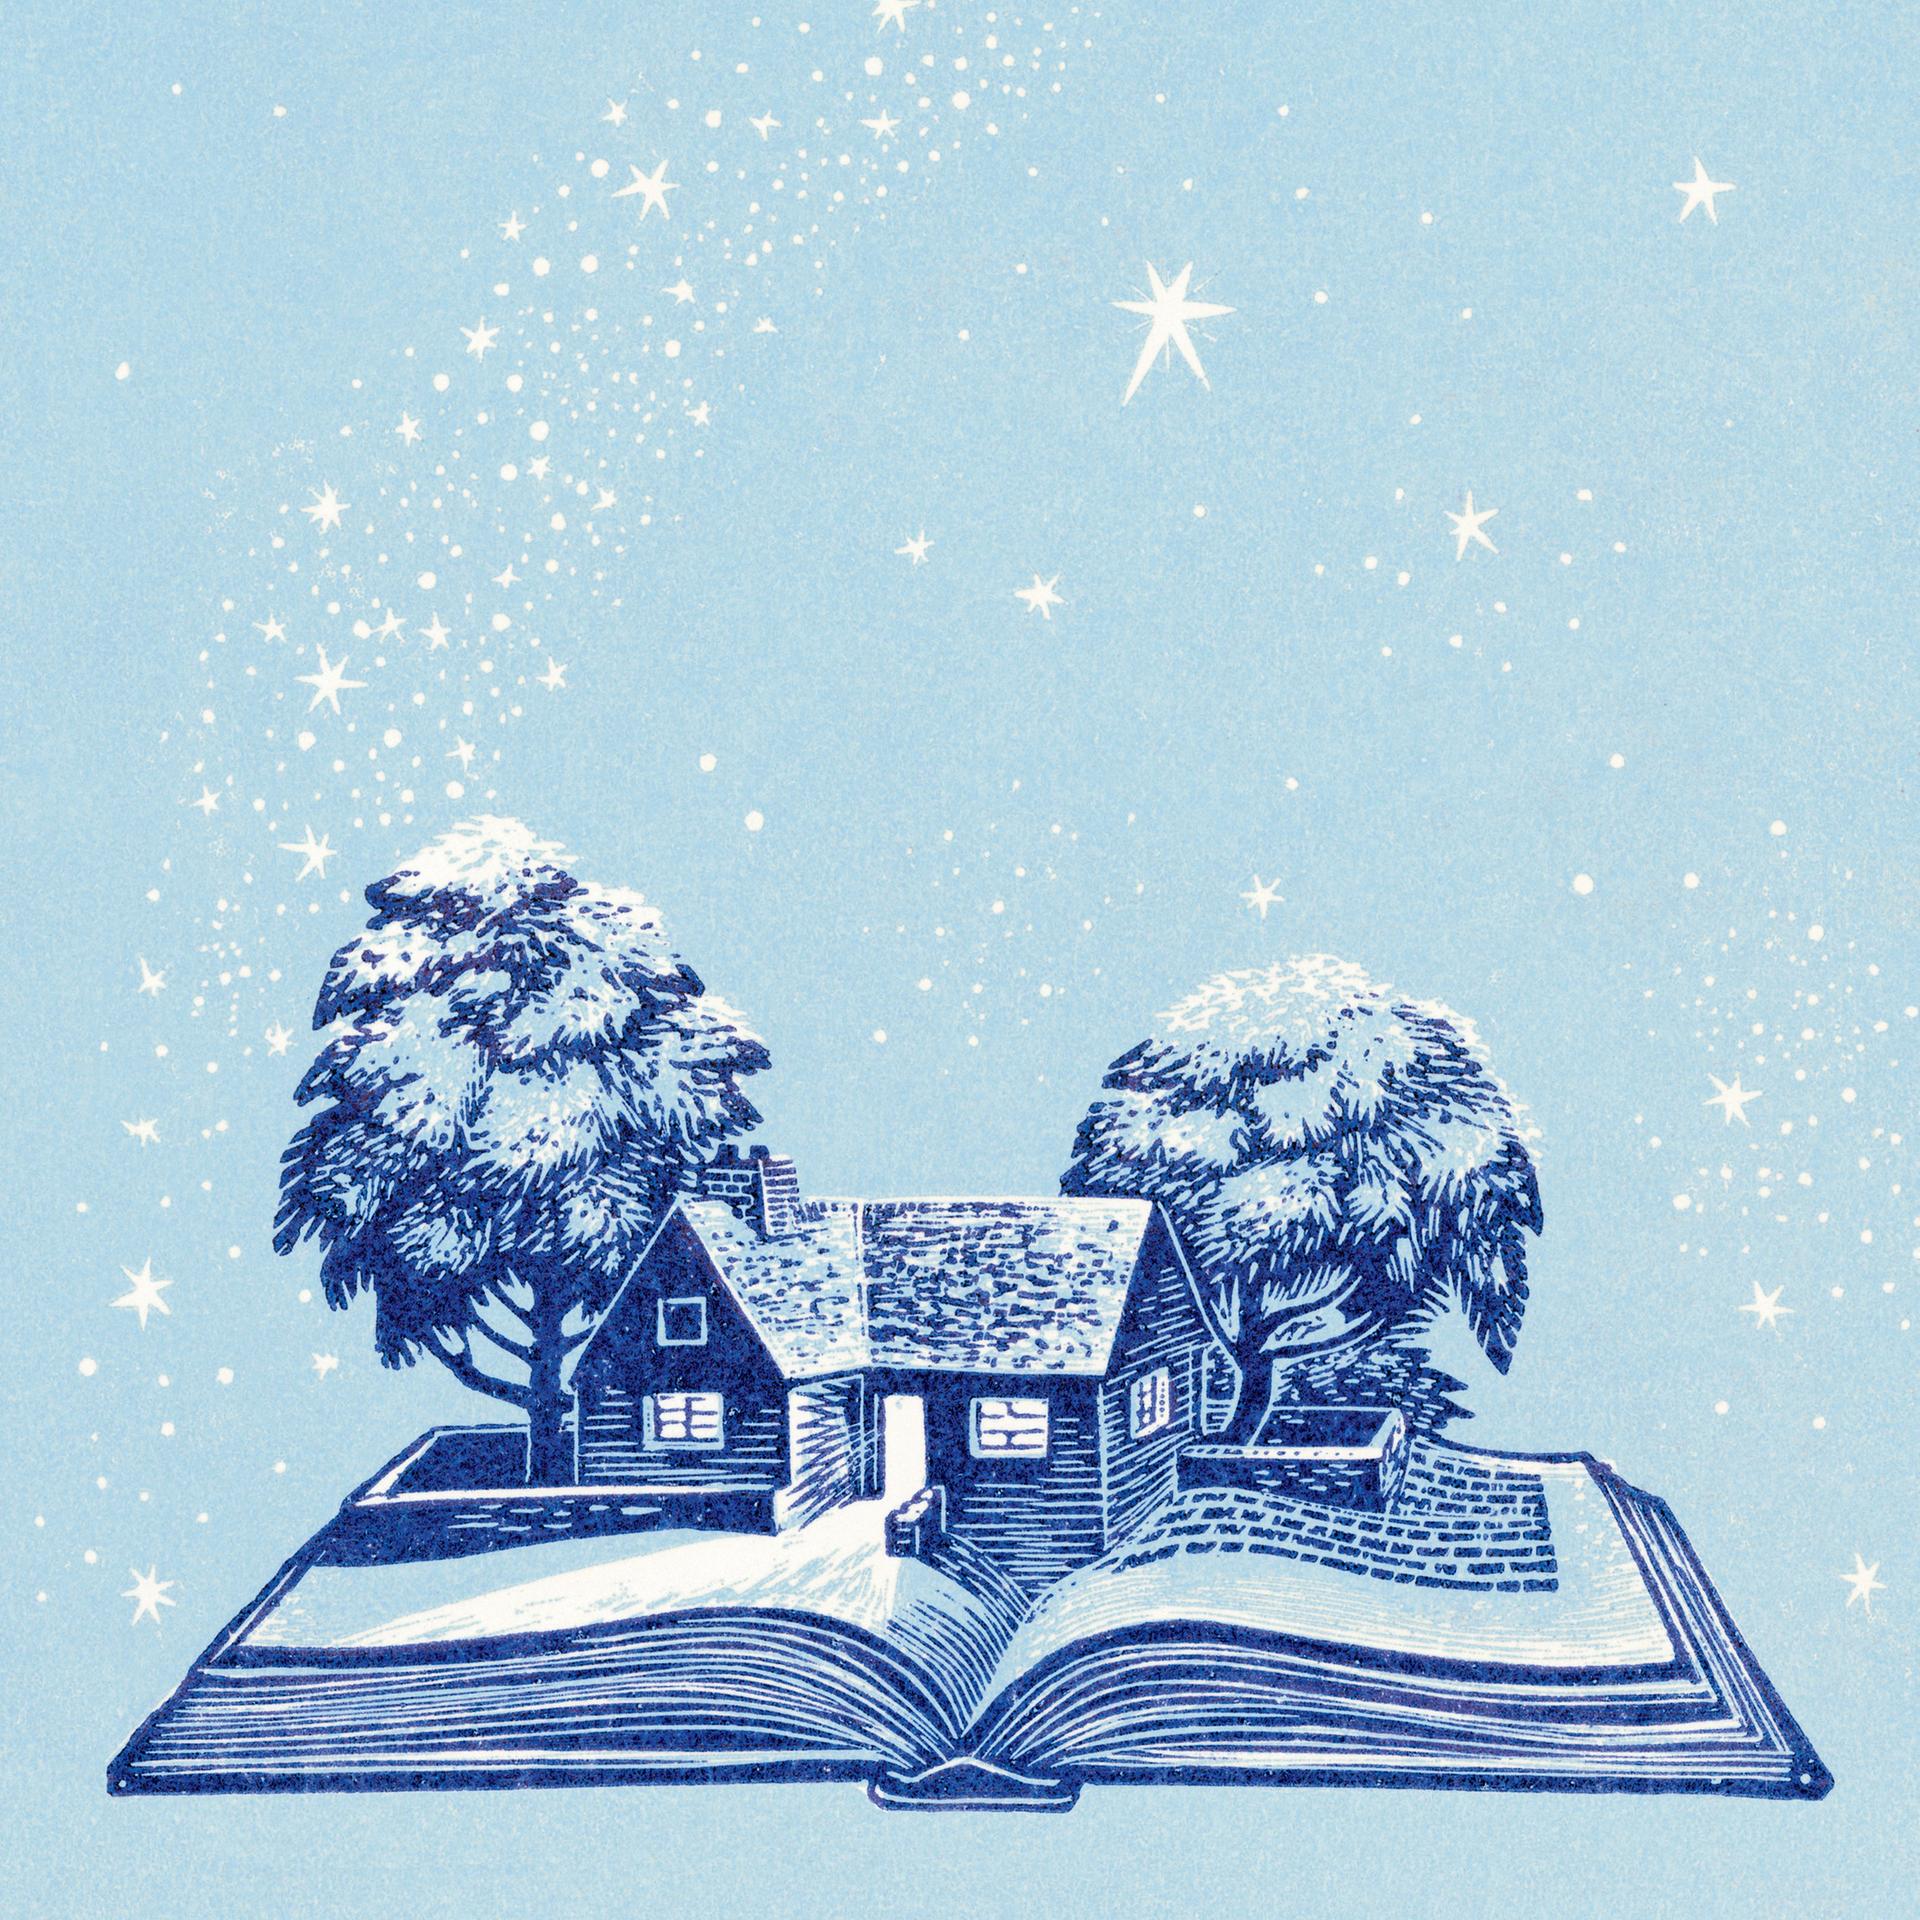 Zeit zum Lesen – Mit diesen Büchern starten Sie perfekt ins neue Jahr